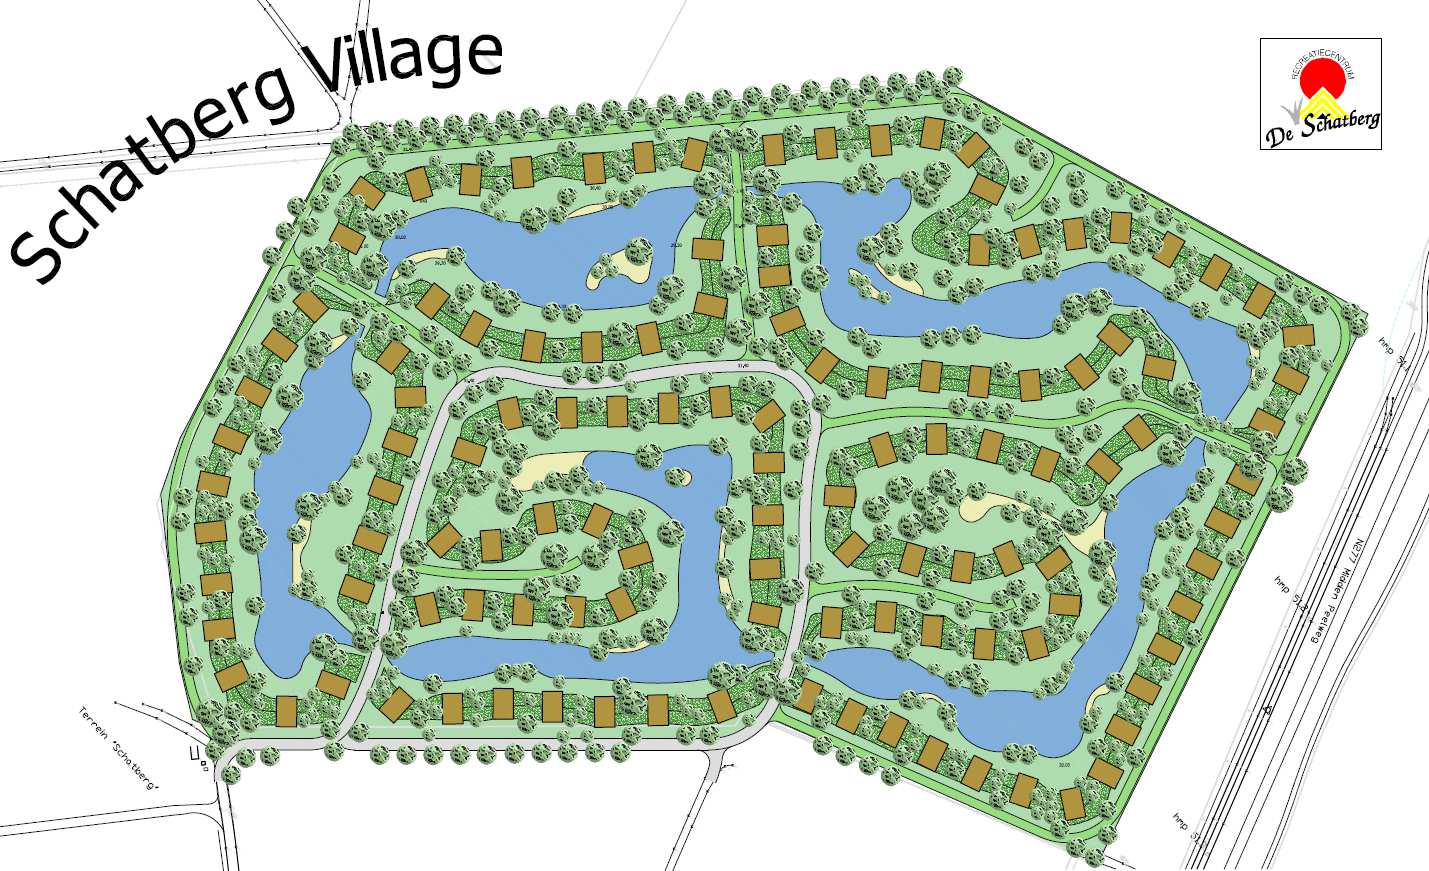 Afbeelding : plattegrond uitbreiding De Schatberg De uitbreiding zal gefaseerd worden aangelegd in aantallen van vijf woningen per fase.